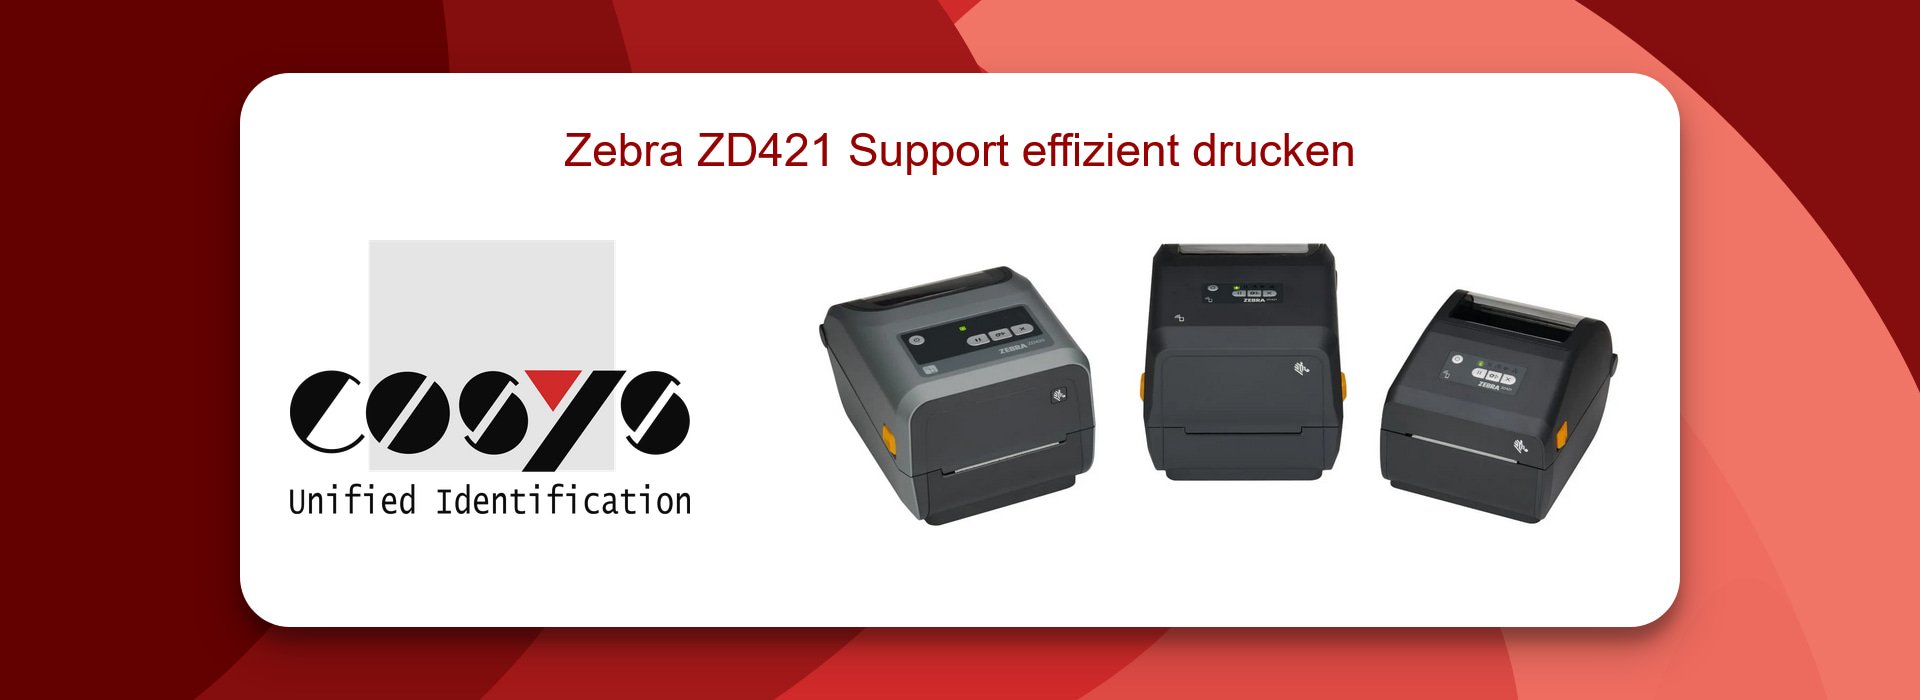 Zebra ZD421 Support für effizienten Druck